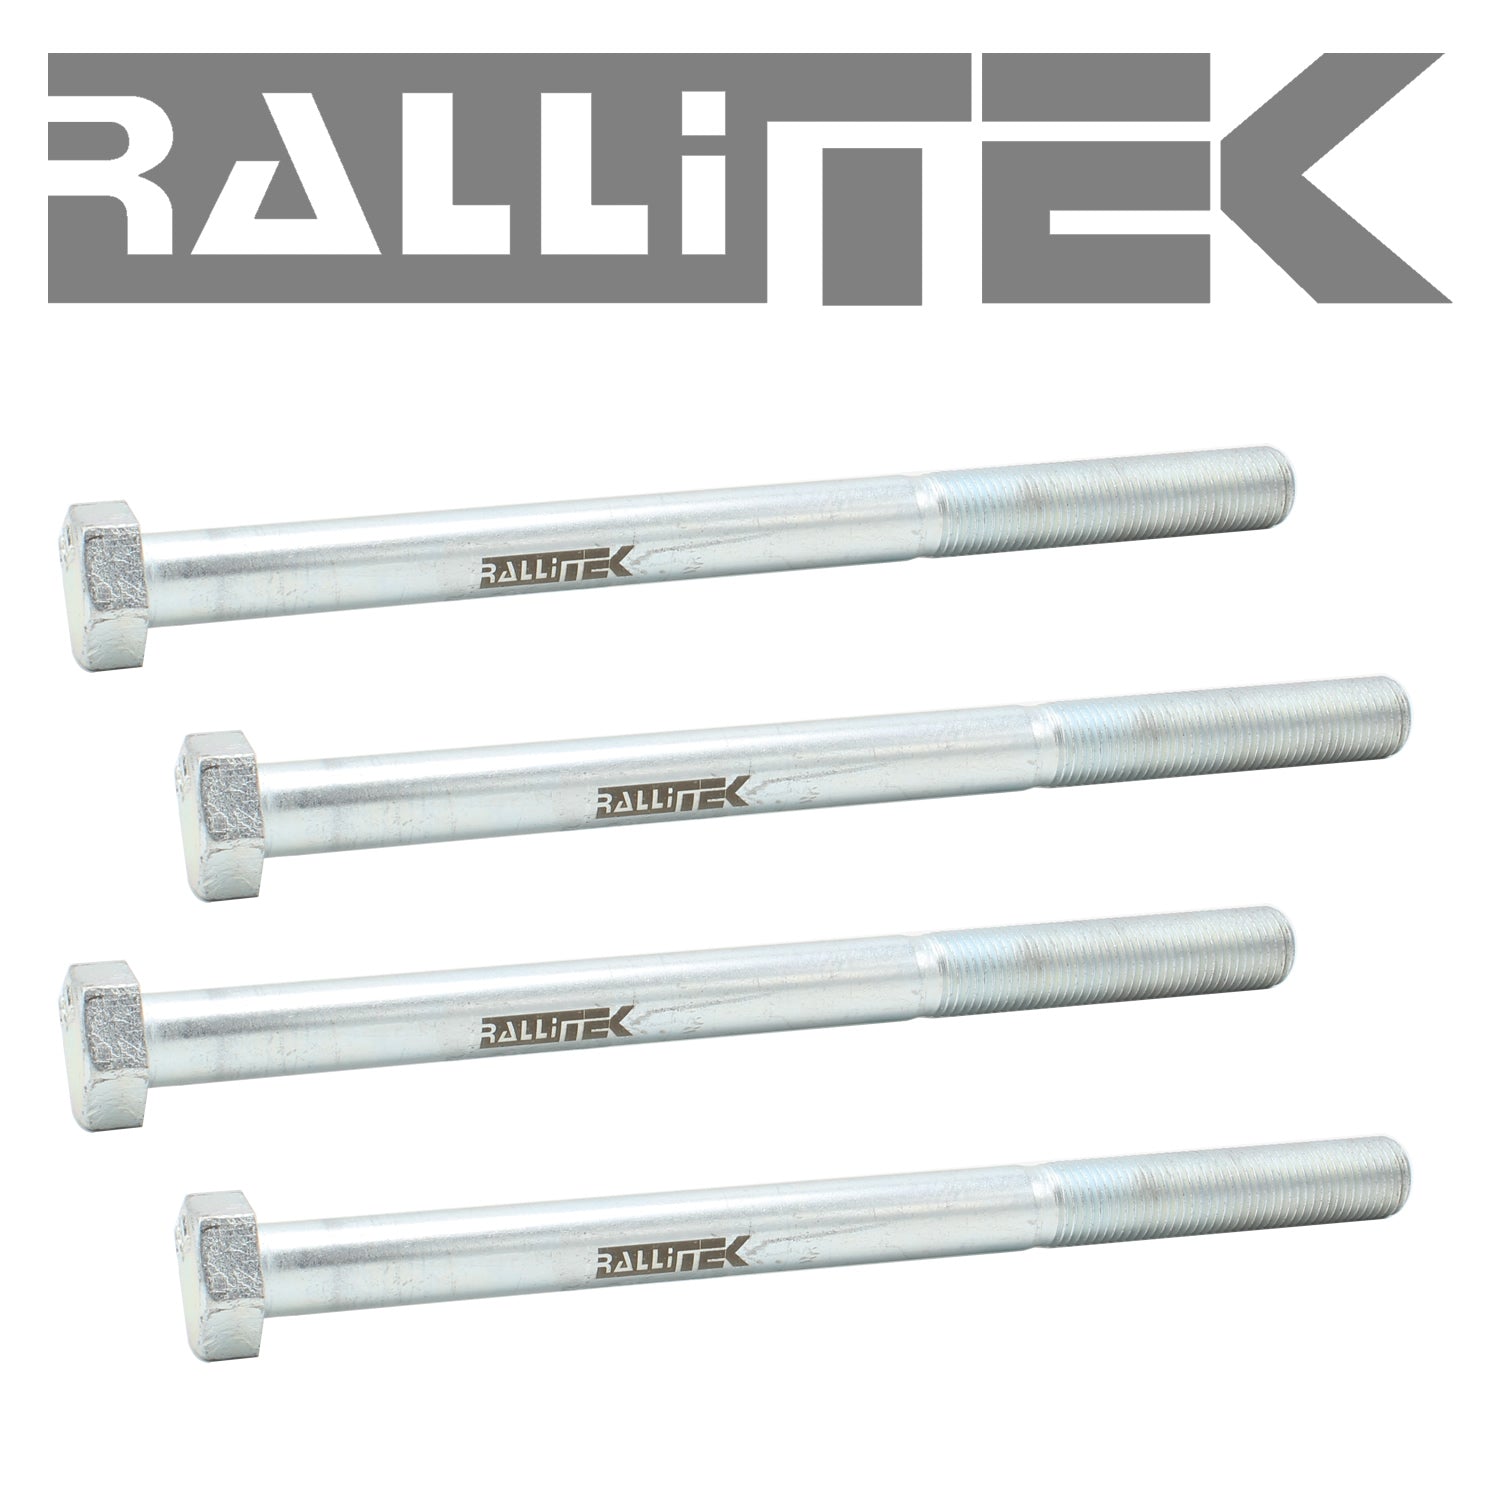 RalliTEK Subframe Drop Spacer Kit - Crosstrek 2013-2017 / Outback 2010-2014 / Forester 2009-2018